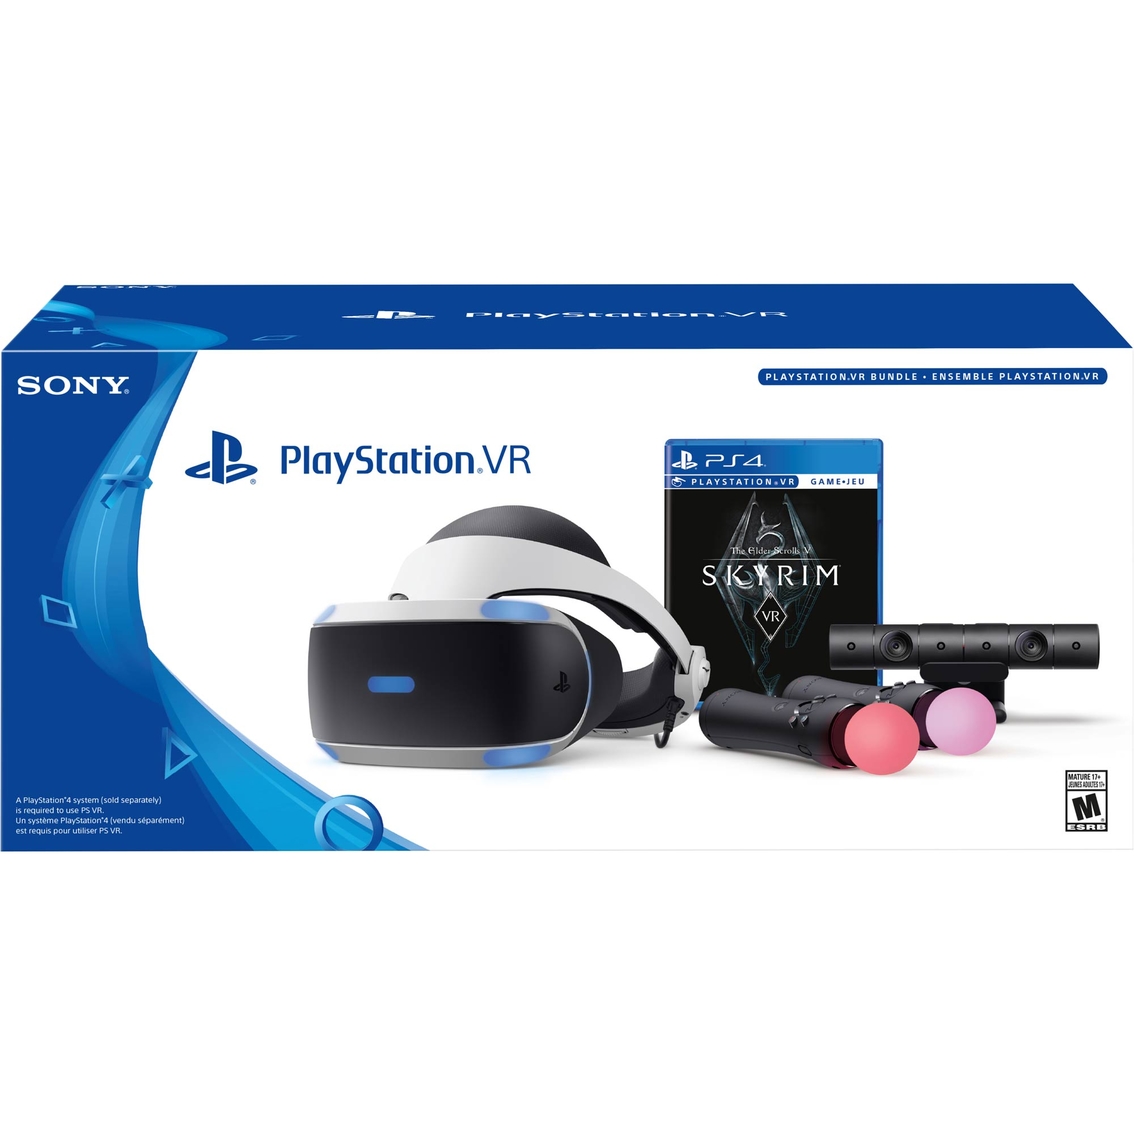 Sony PlayStation VR The Elder Scrolls V Skyrim VR Bundle - Image 2 of 3